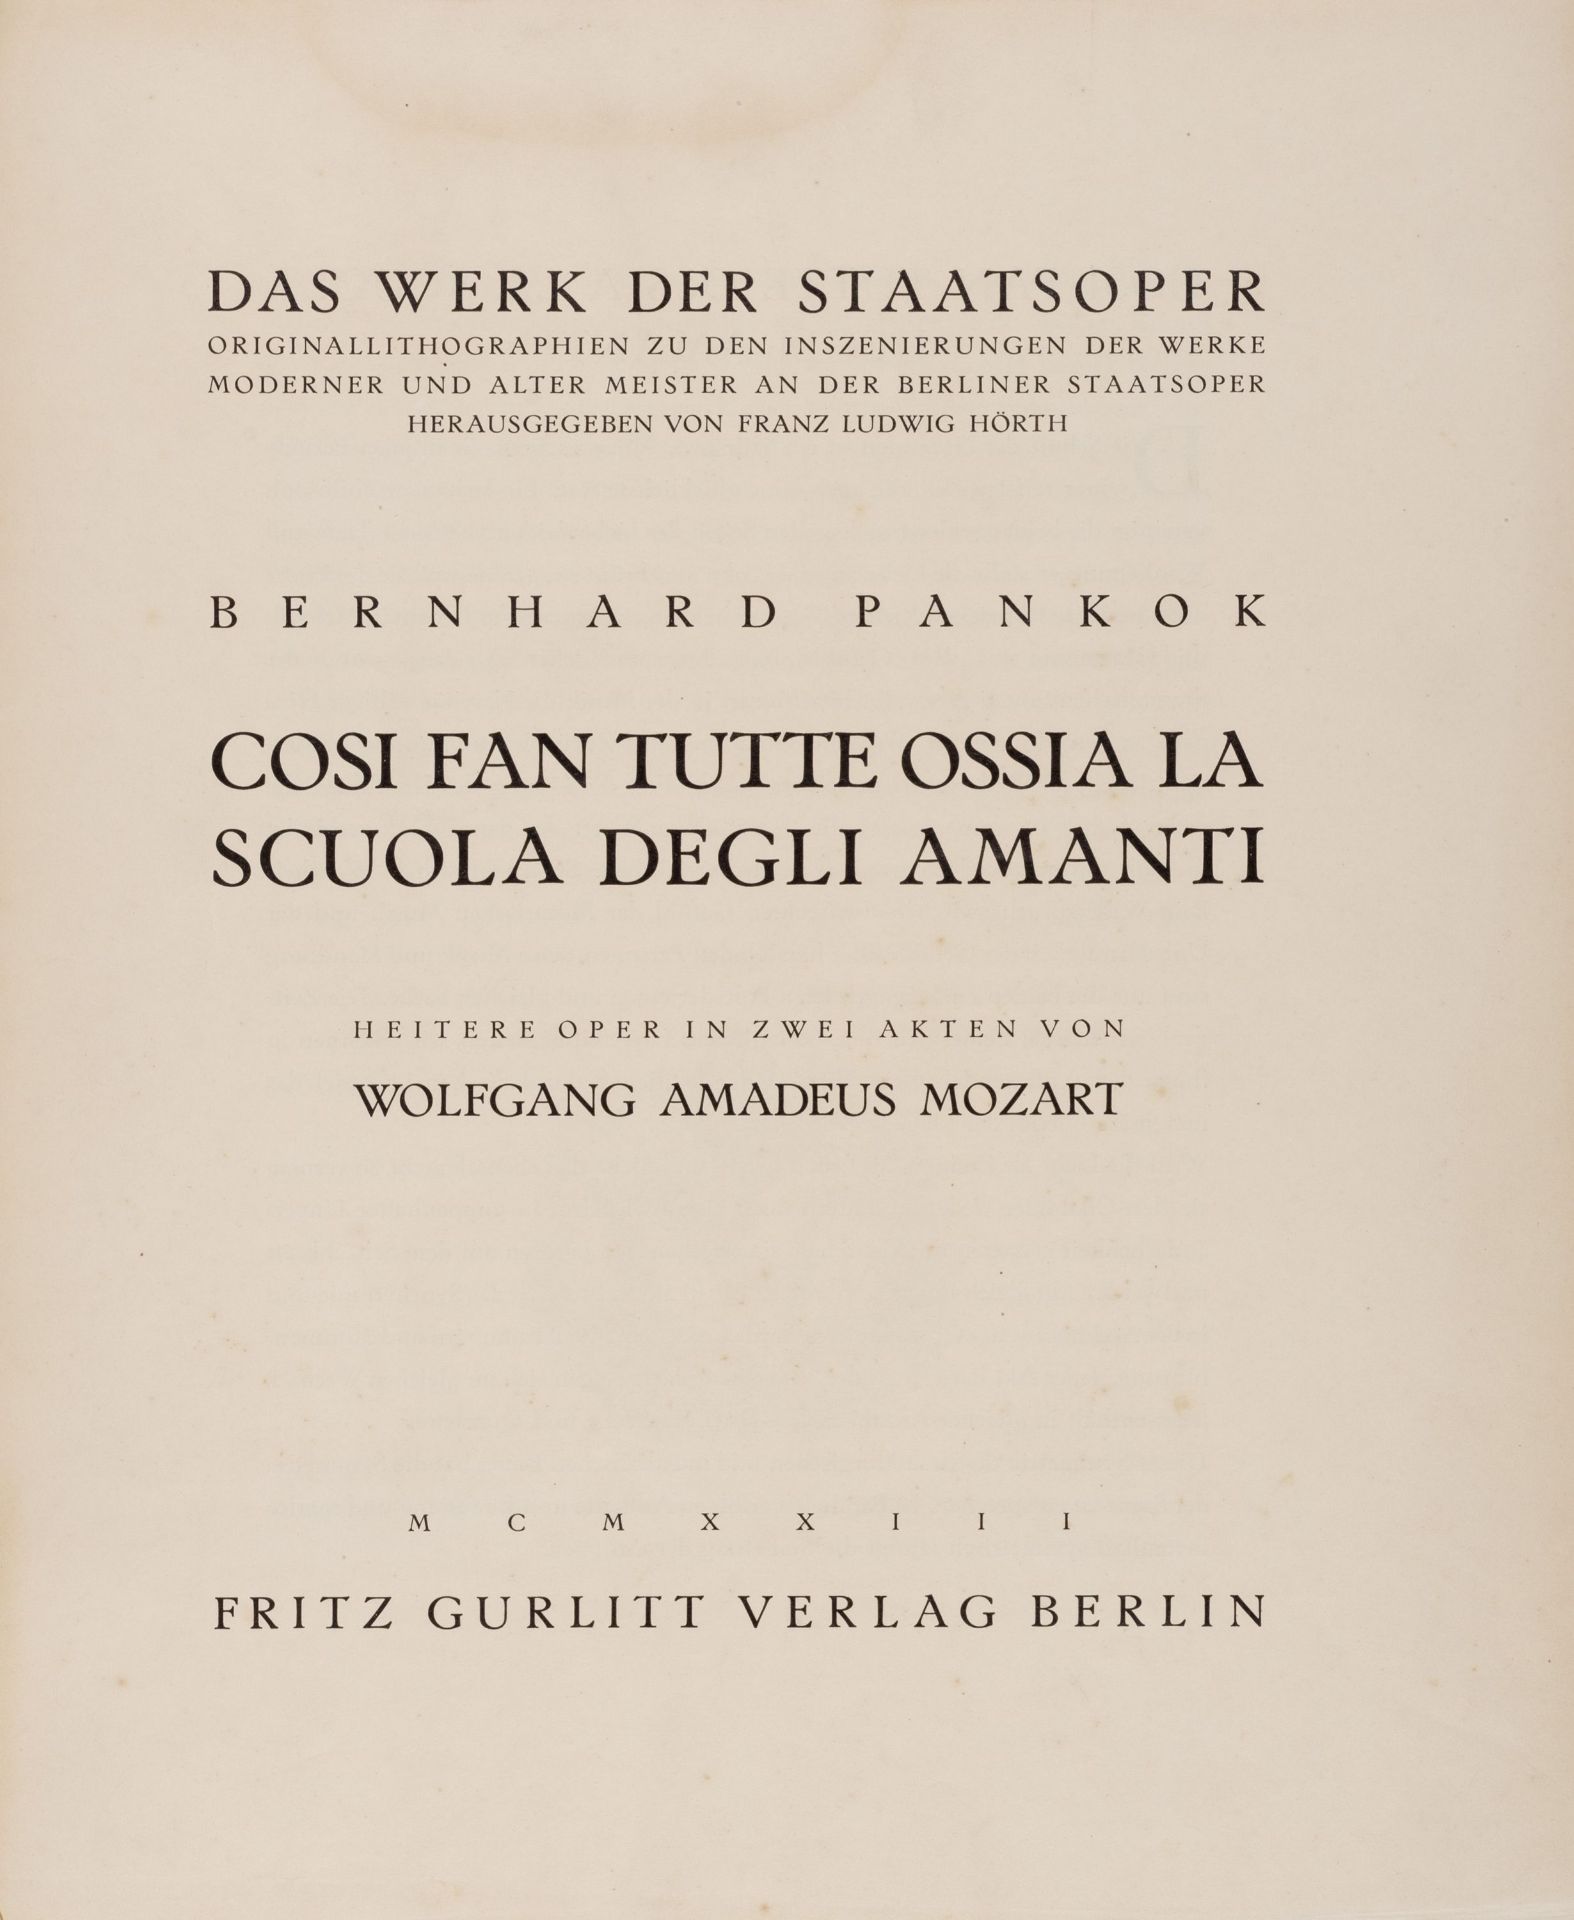 Bernhard Pankok "Cosi fan tutte". 1922. - Image 2 of 13